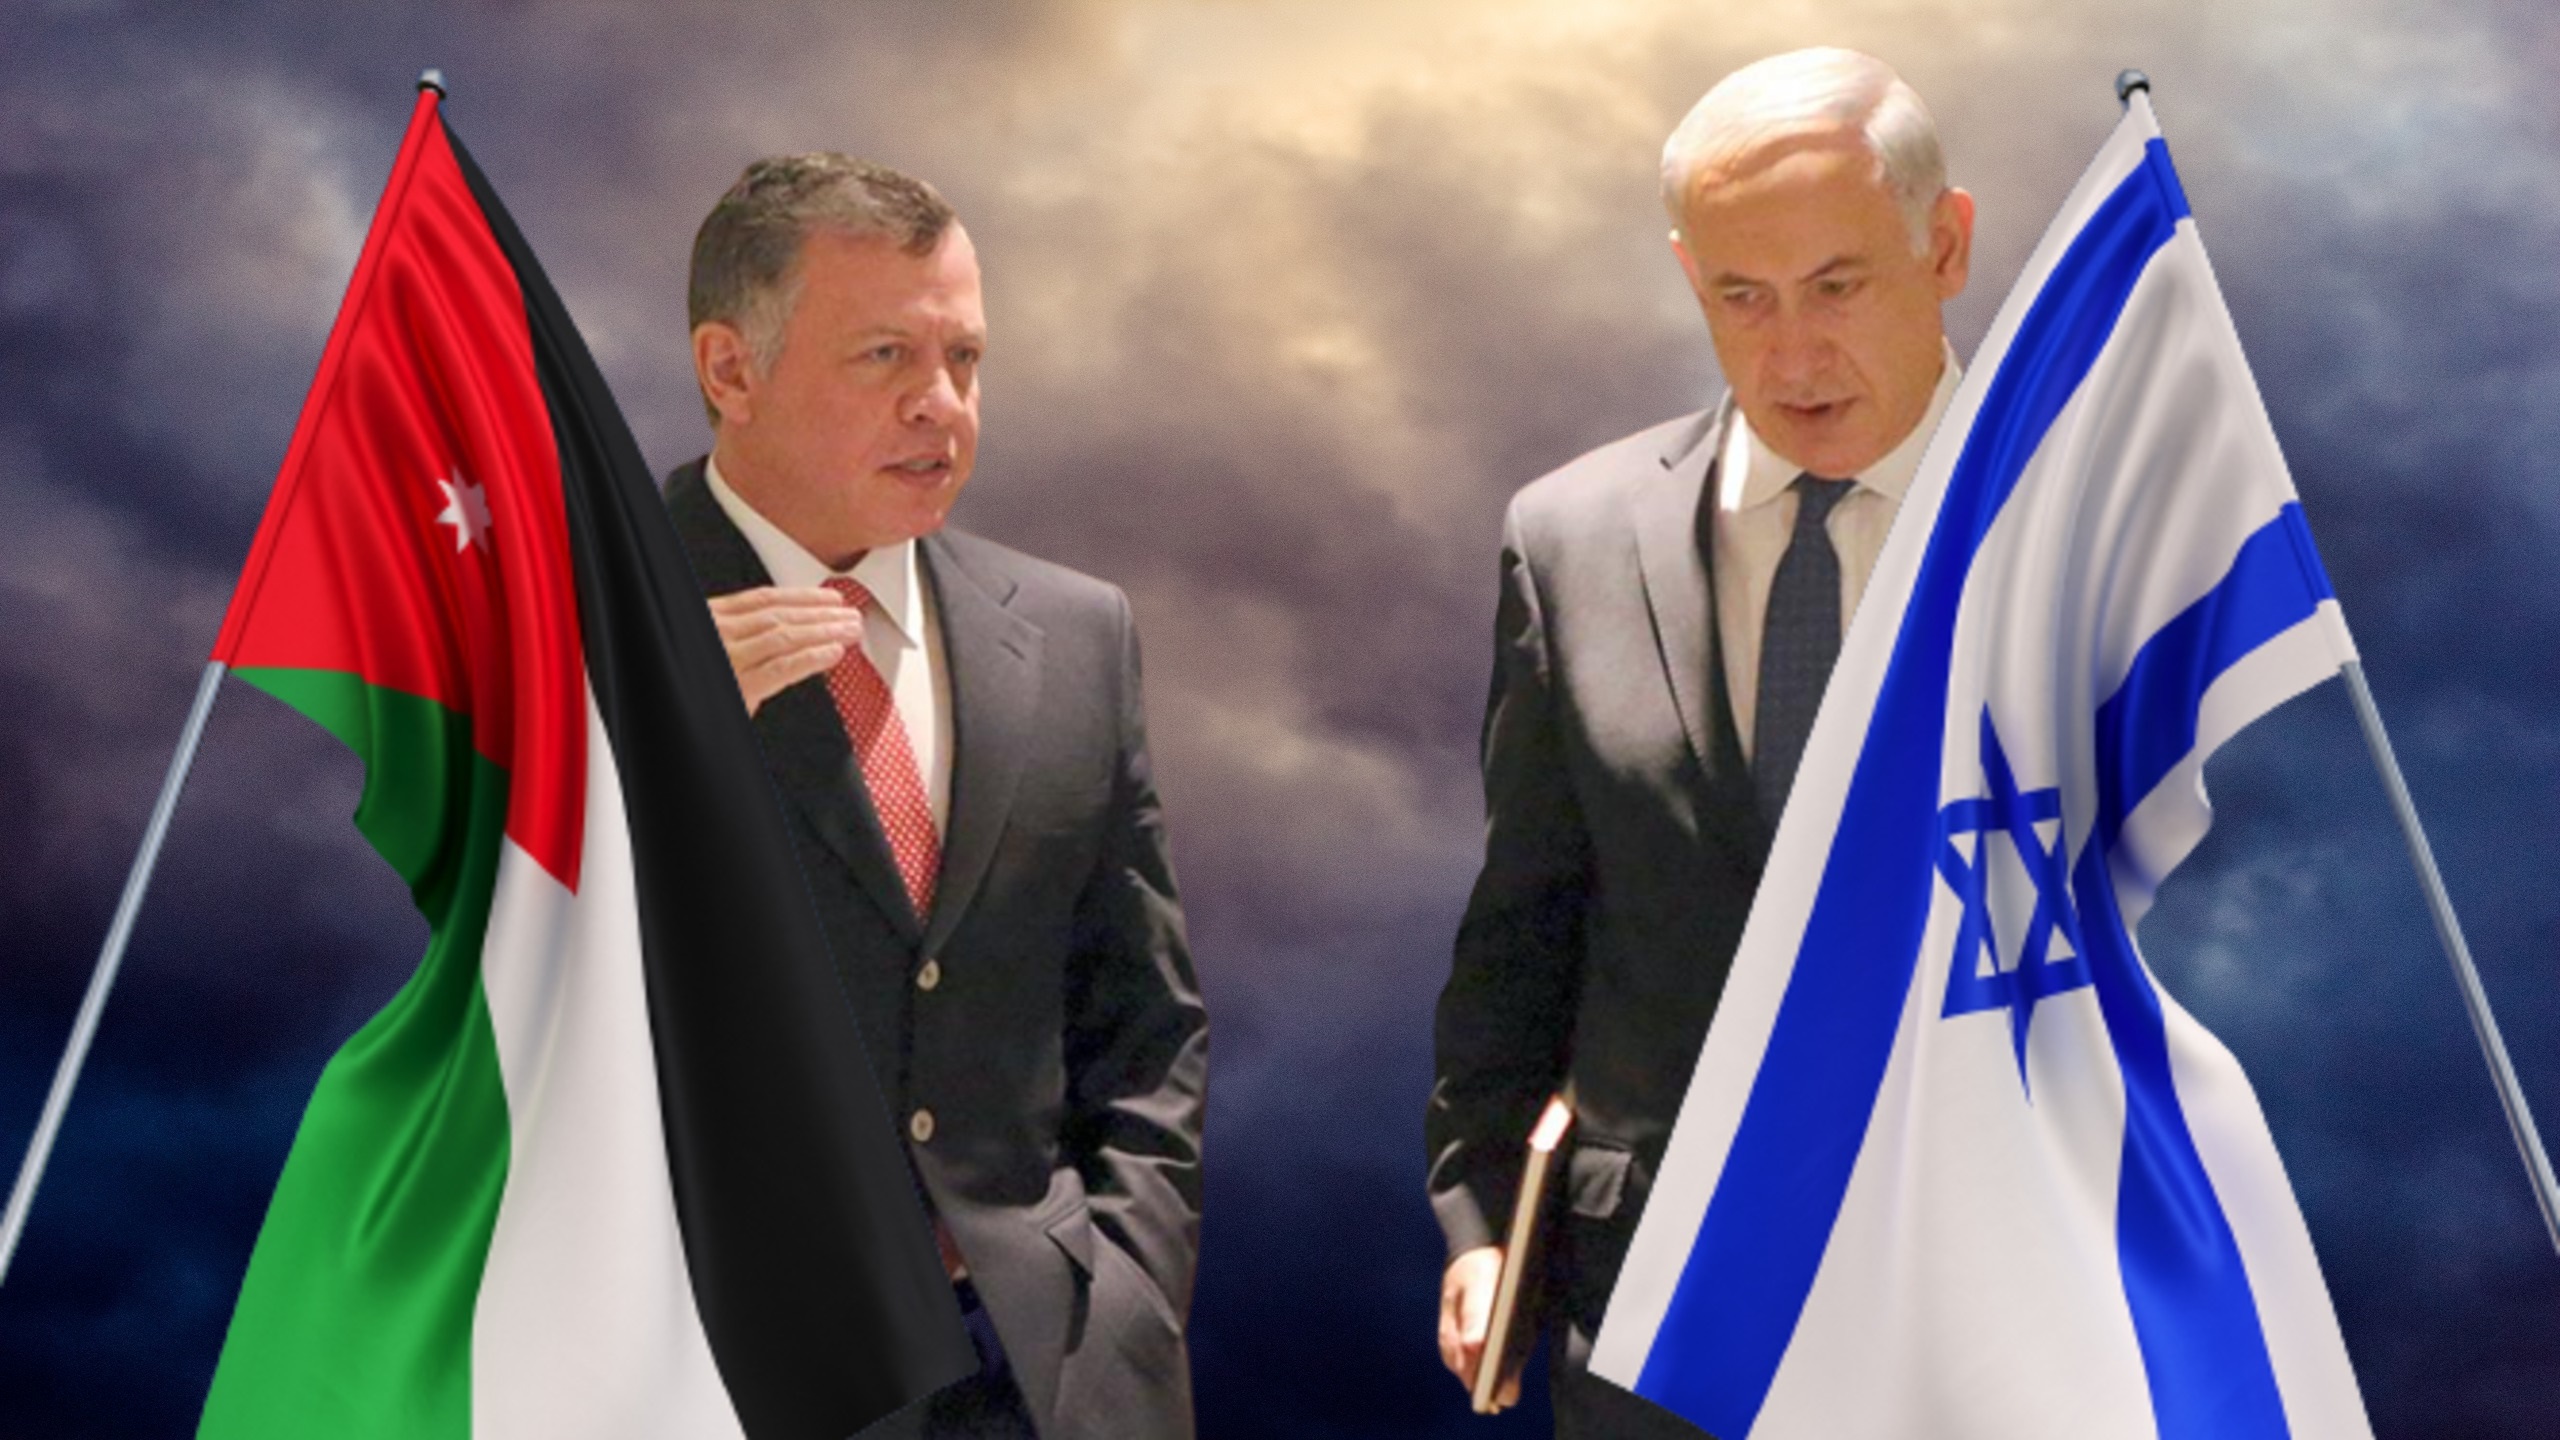 Jordanians See Gloomy Picture in Netanyahu’s Return